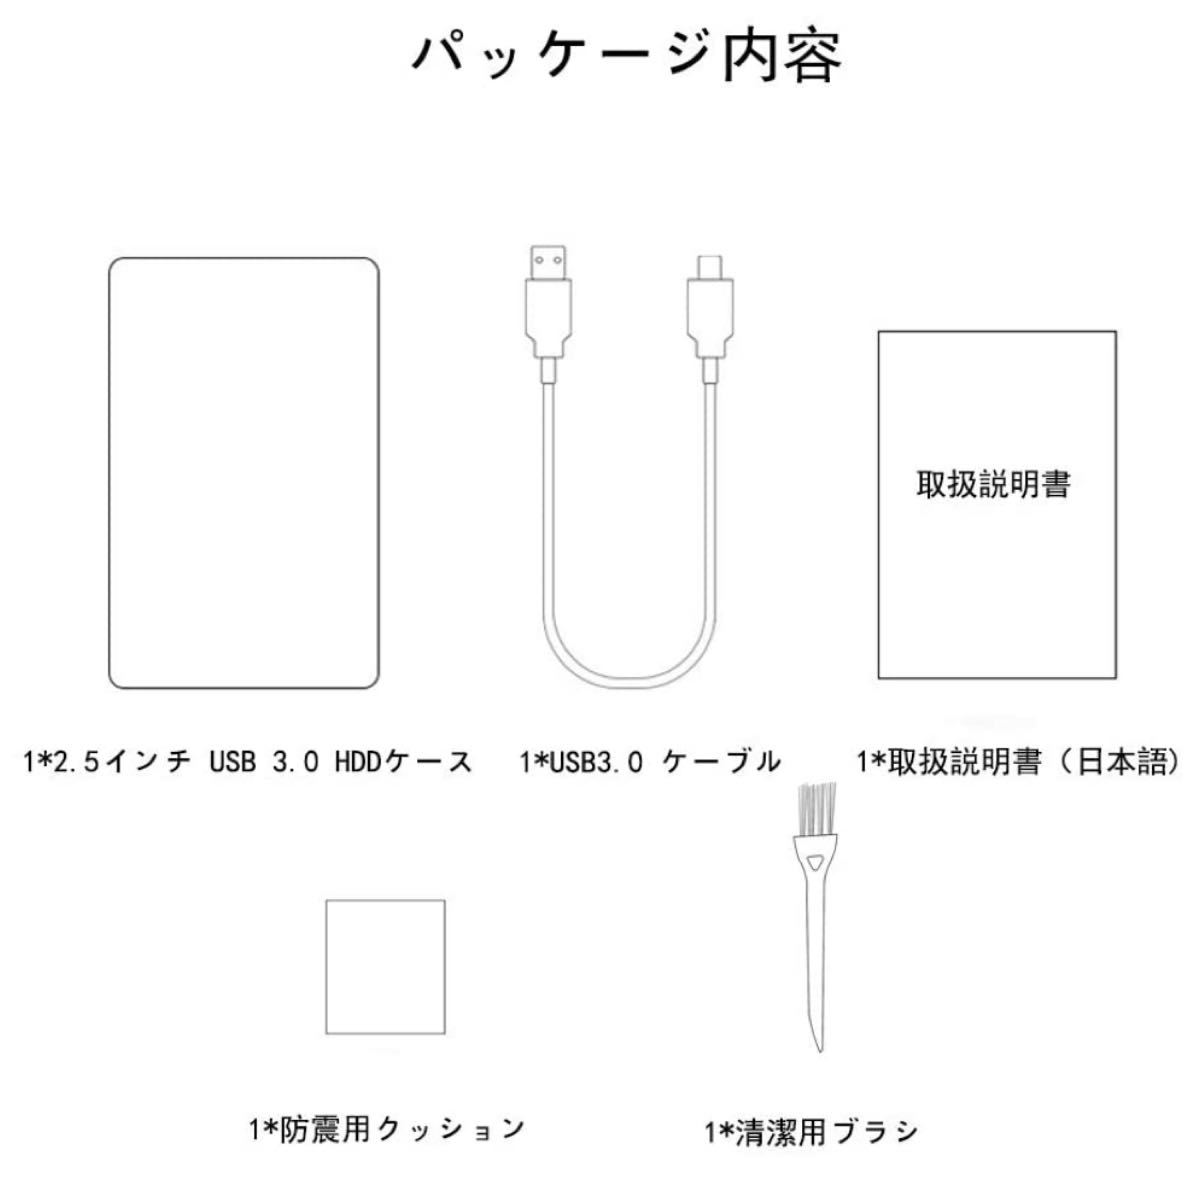 【USB3.0】 2.5インチ 9.5mm/7mm厚両対応 HDD/SSDケース ssd外付けケース